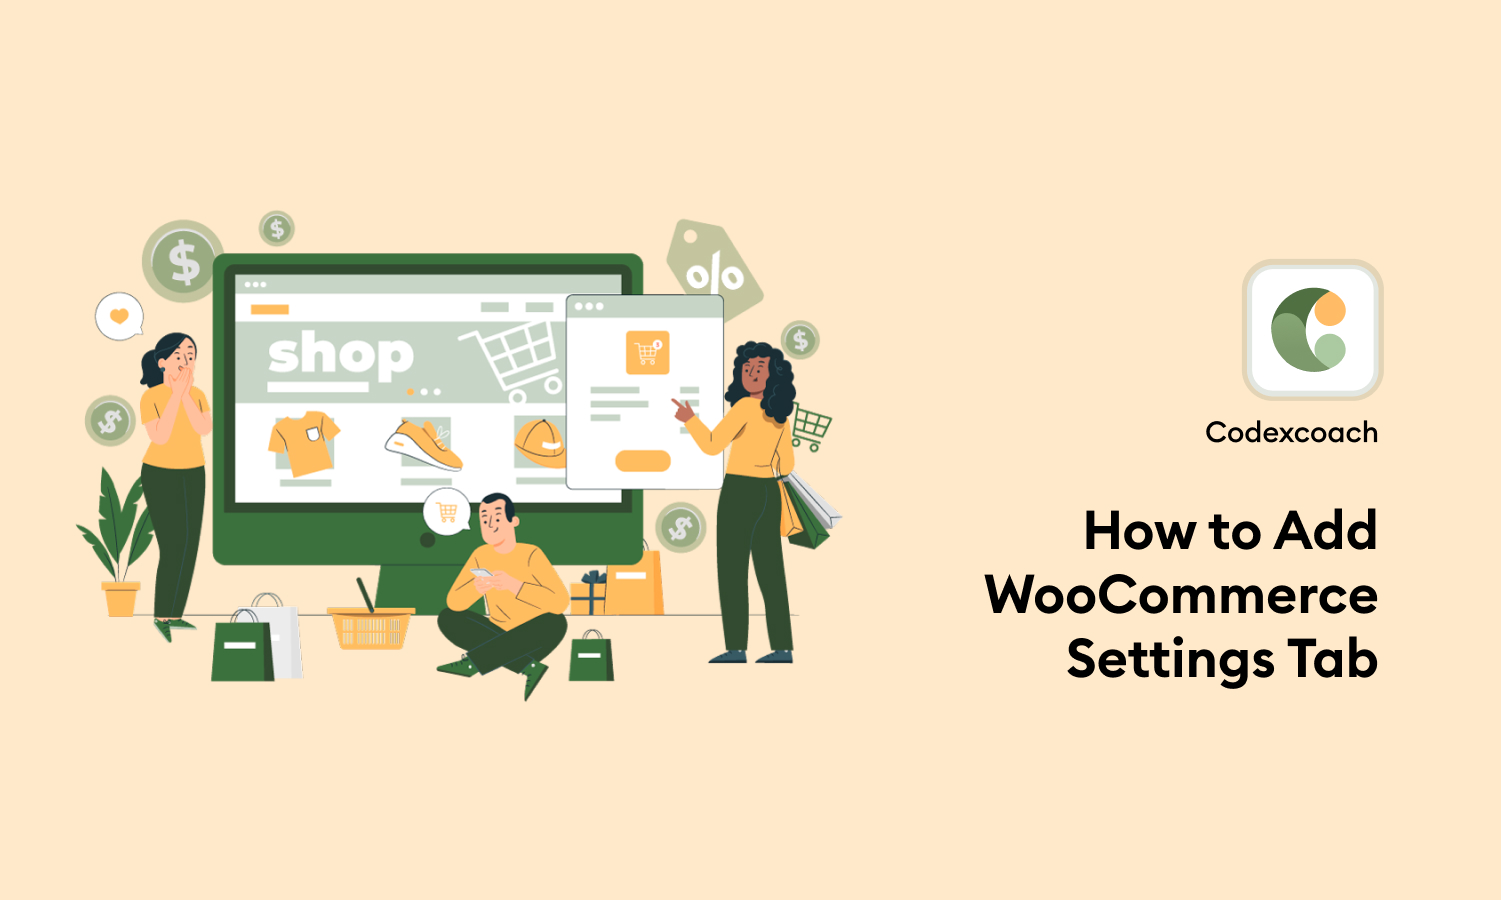 How to Add WooCommerce Settings Tab